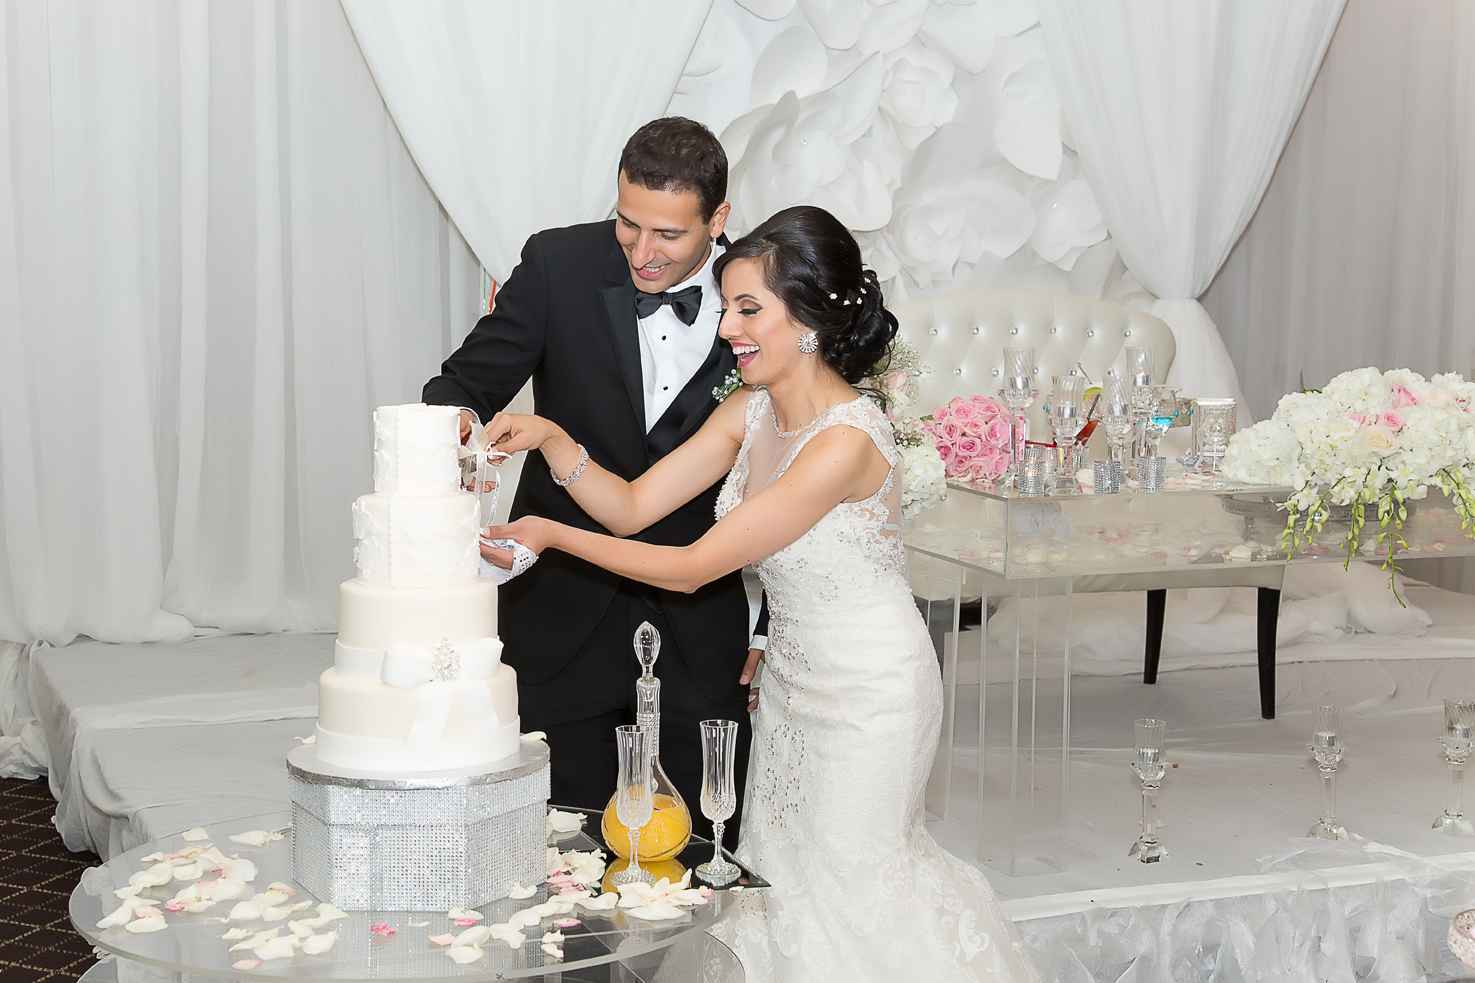 White overseas wedding cakes